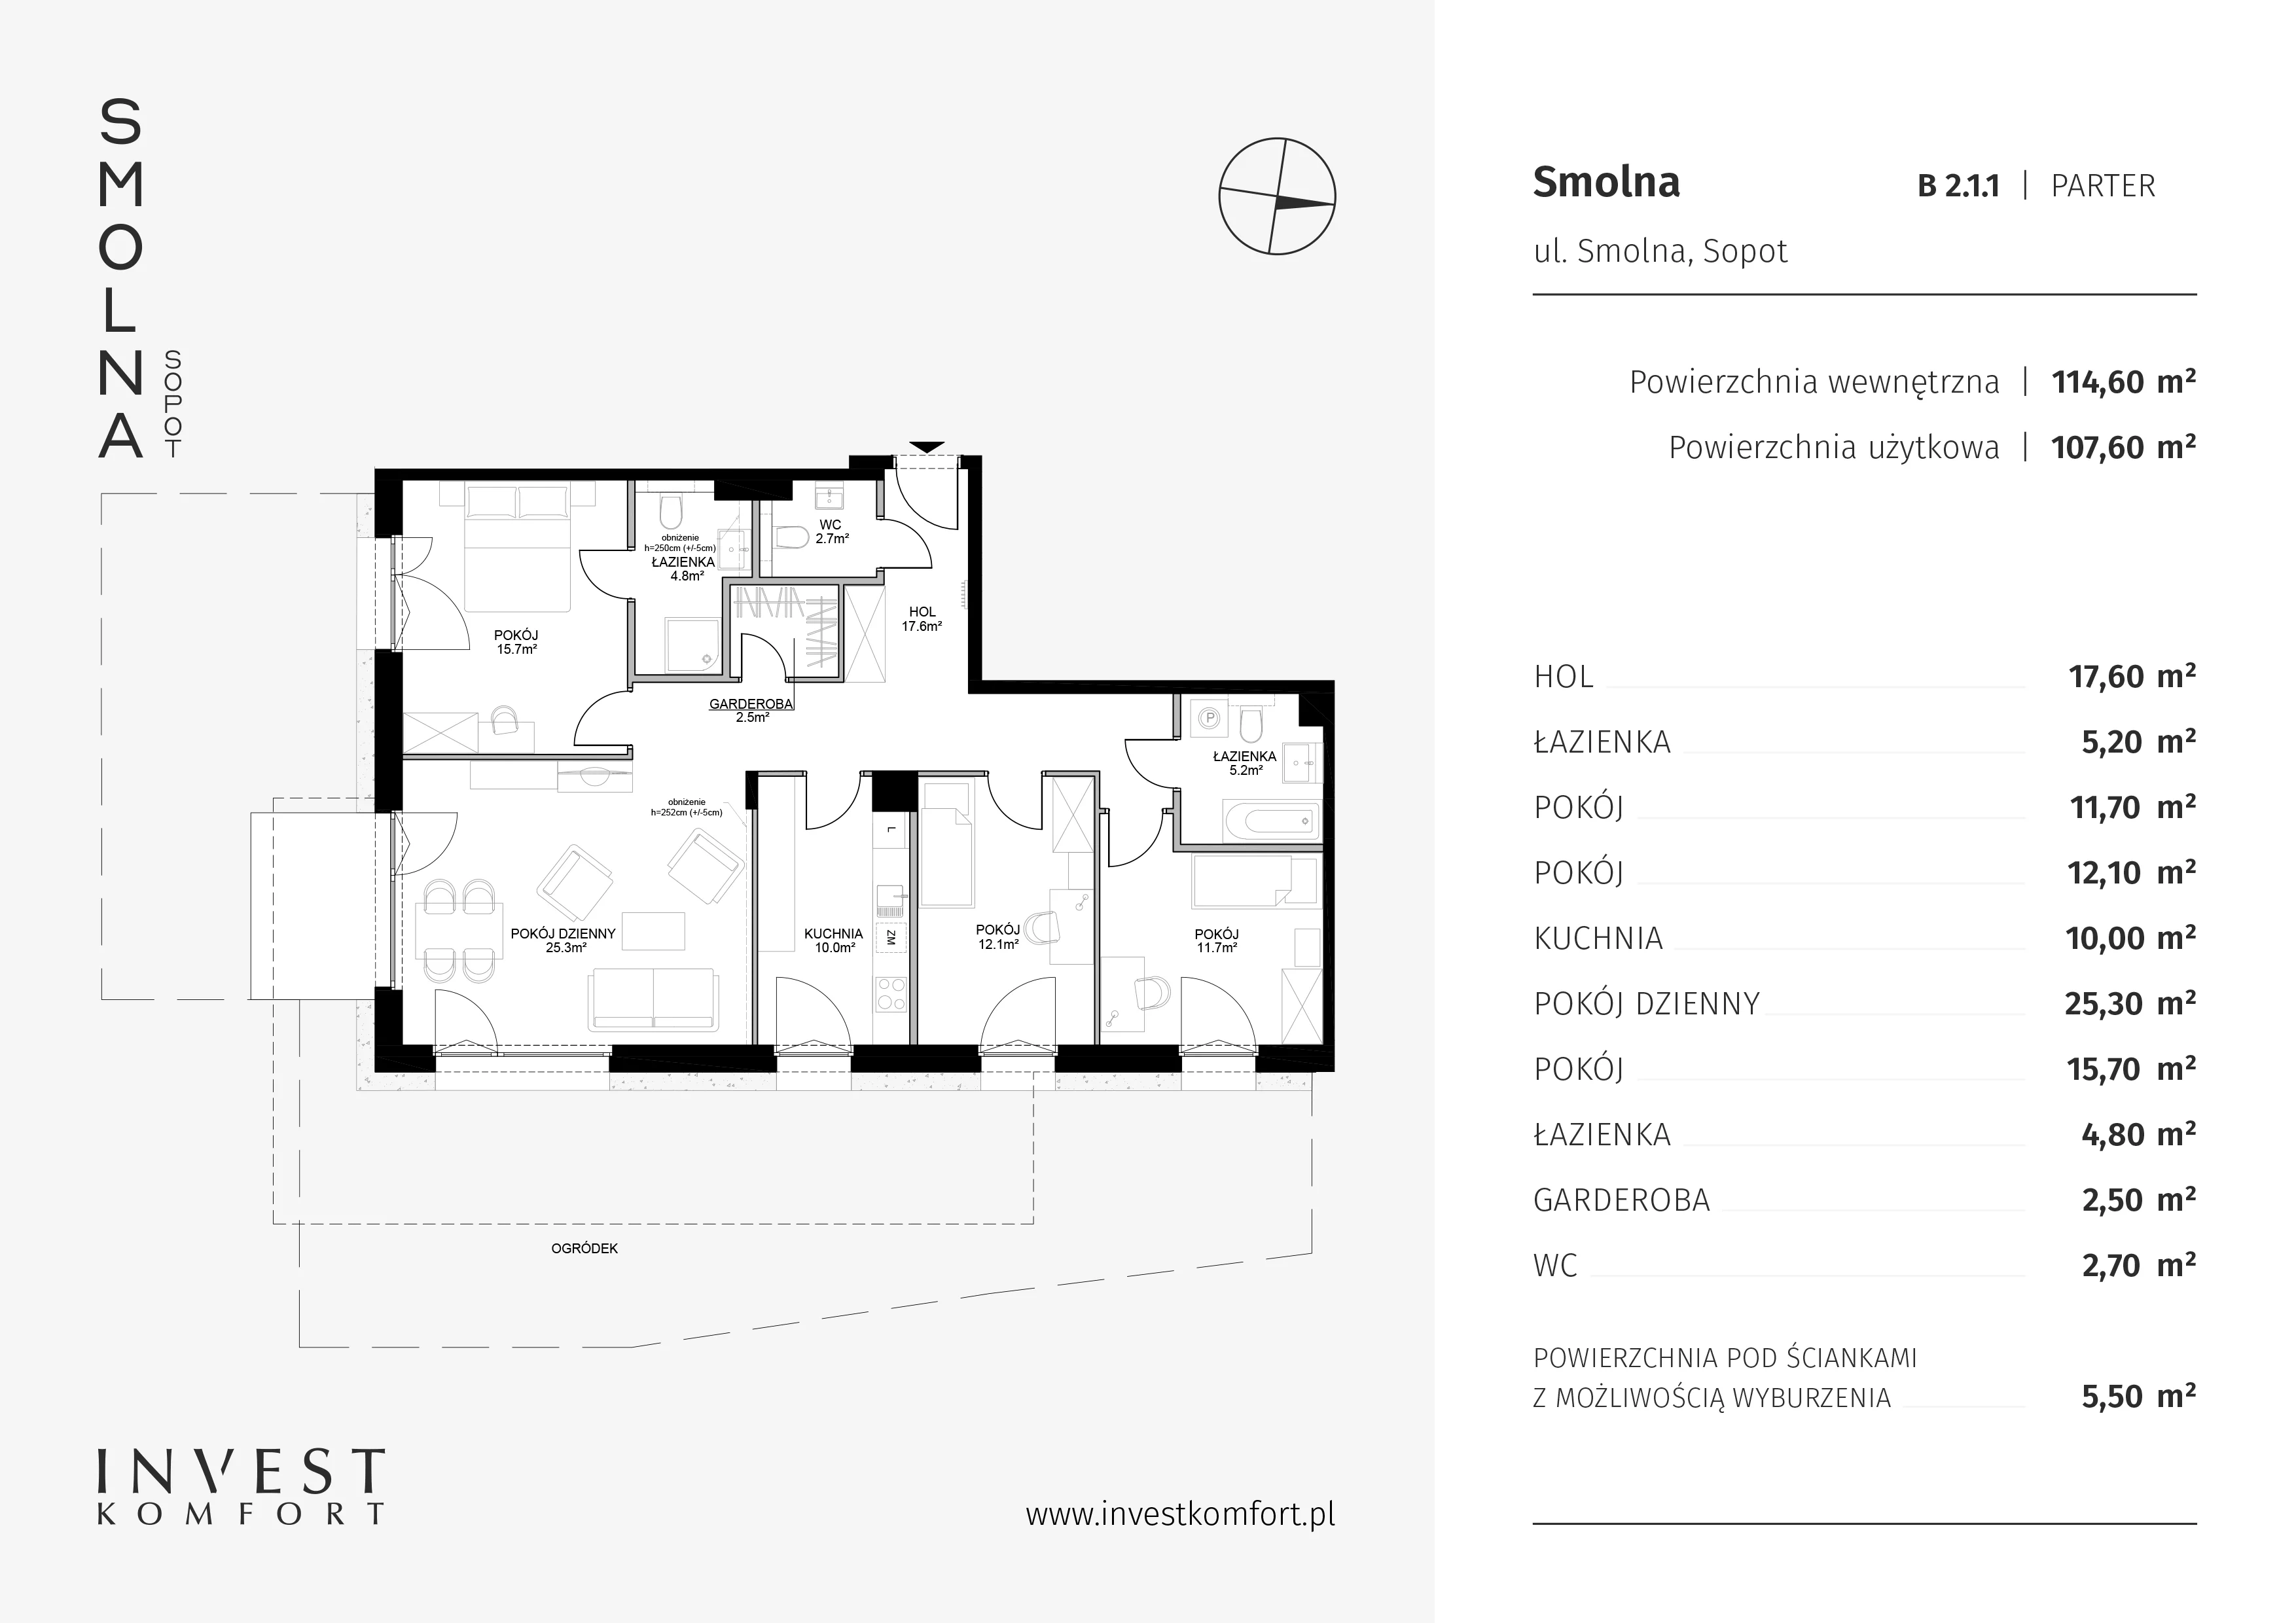 Mieszkanie 114,40 m², parter, oferta nr B2.1.1, Smolna, Sopot, Świemirowo, ul. Smolna